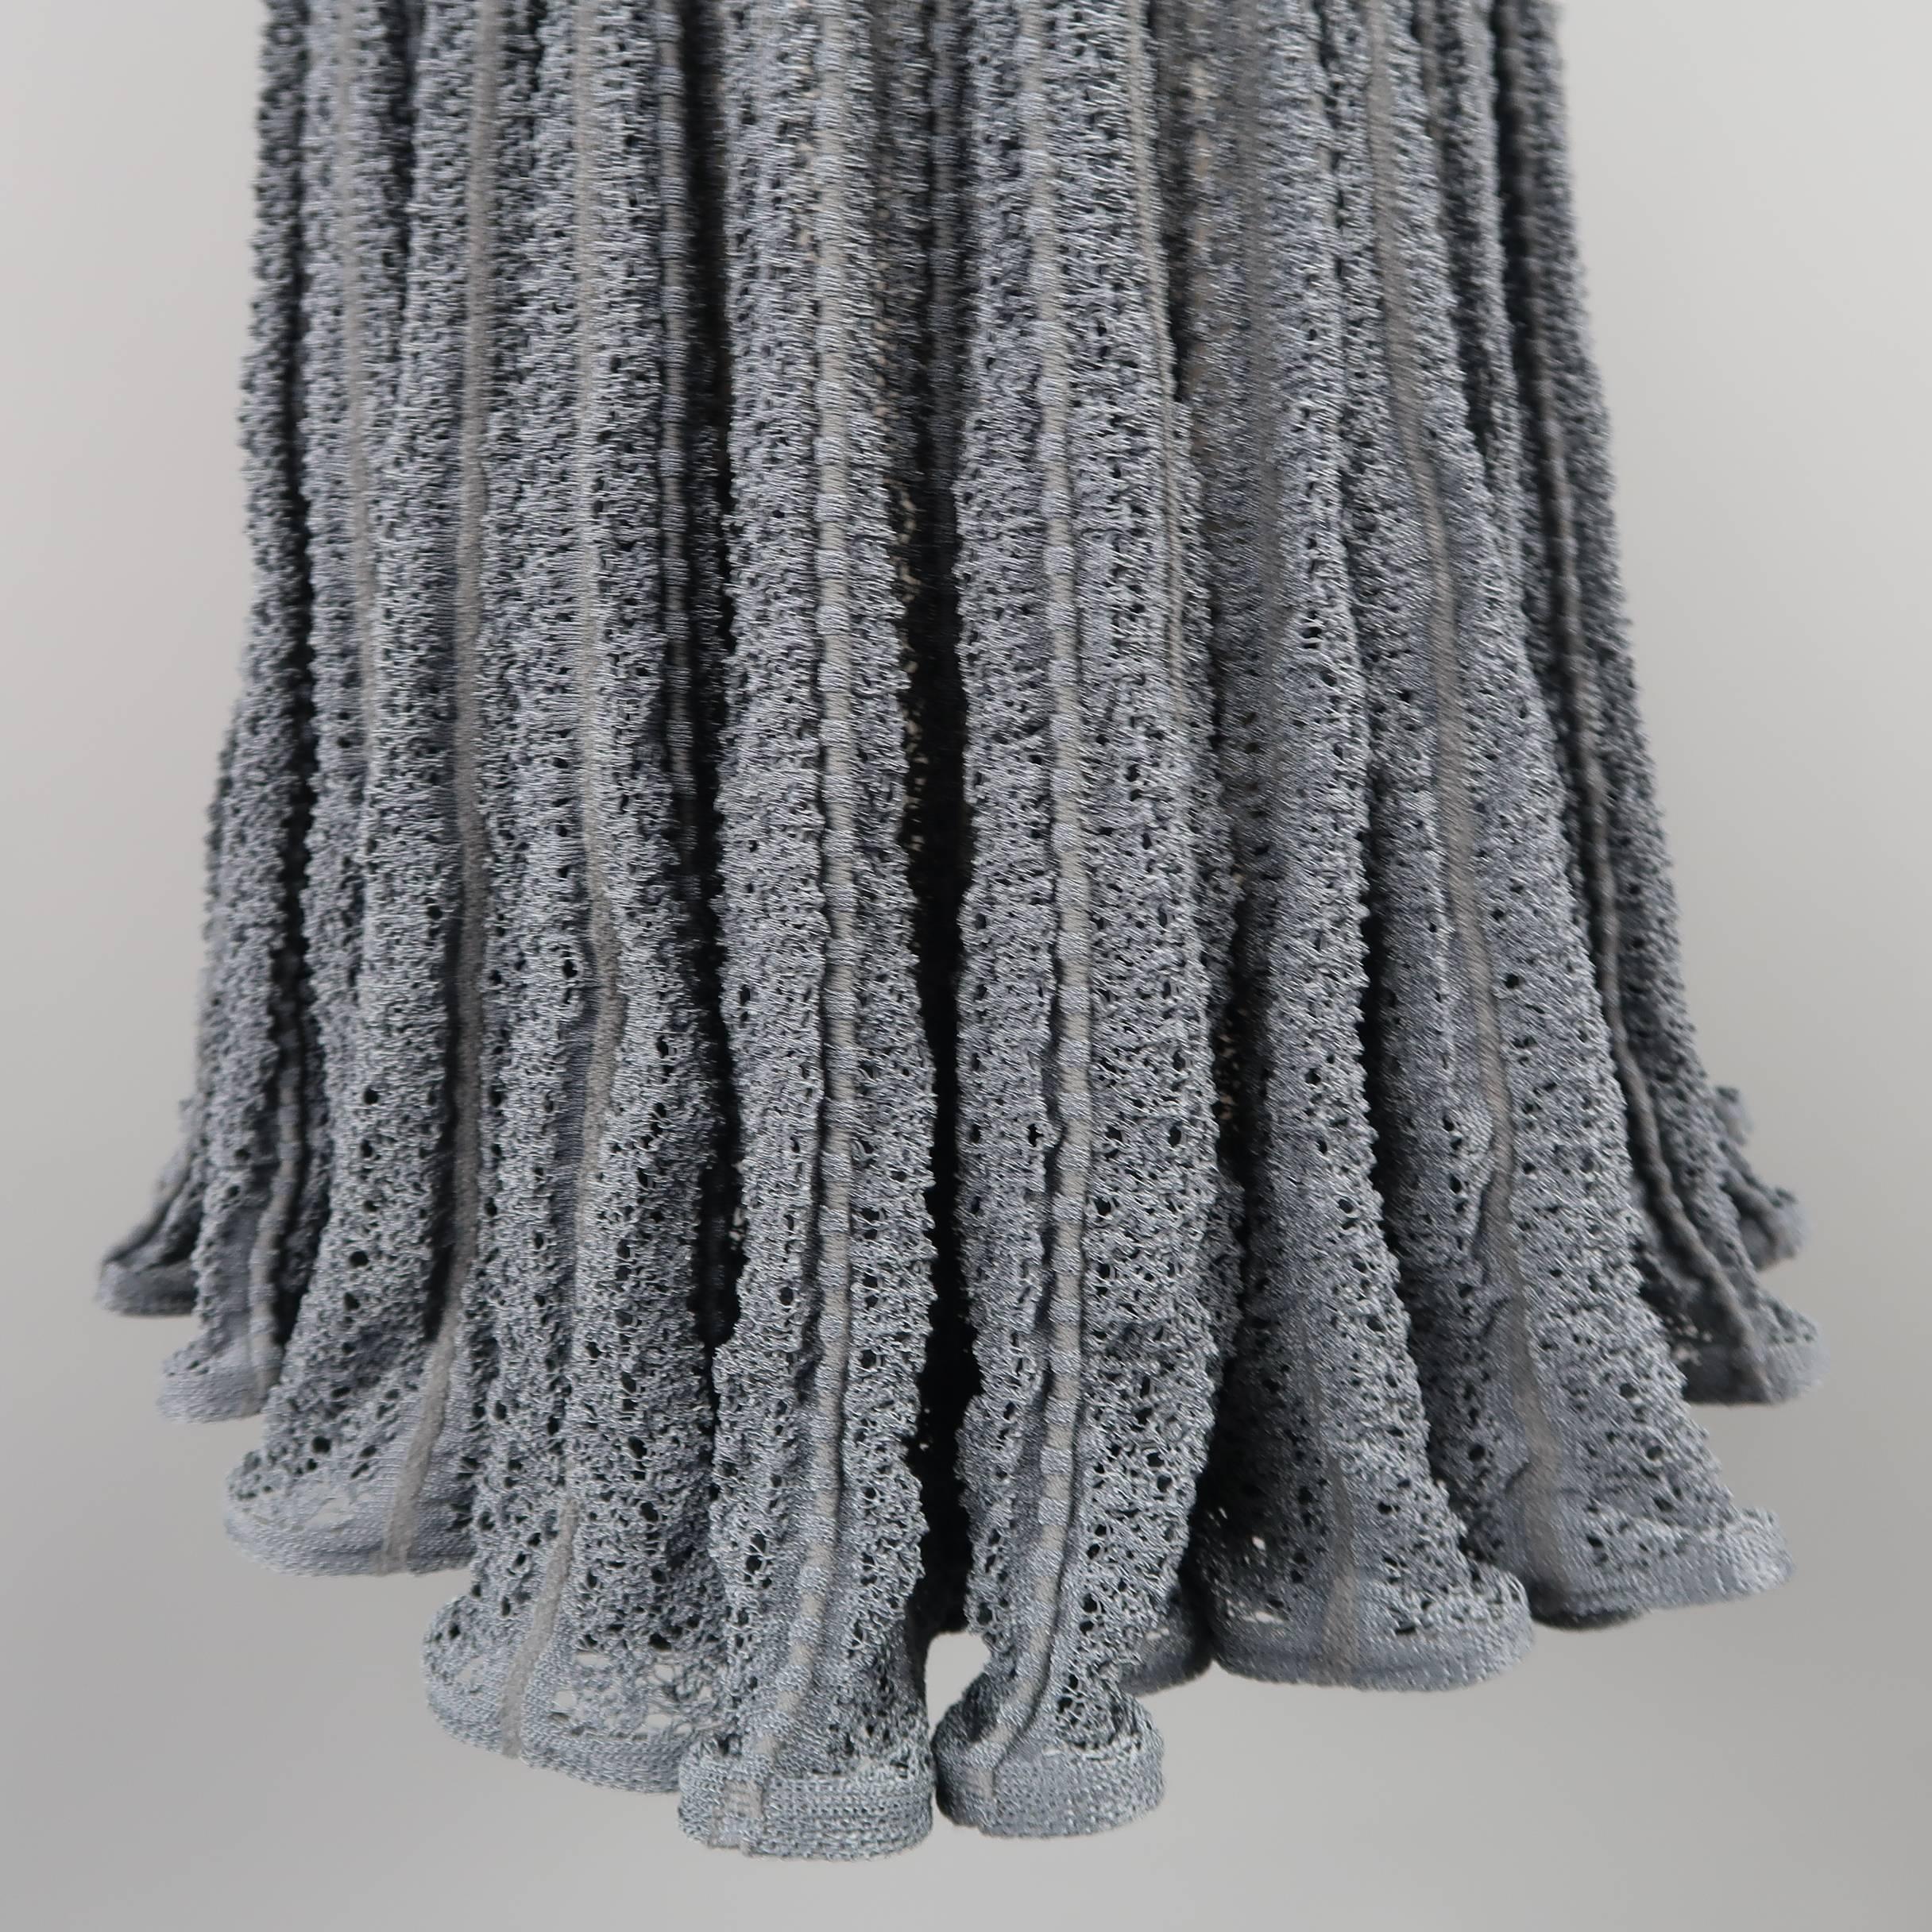 Women's Alaia Dress - Blue Gray Cotton Blend Mesh Knit Ruffle Skirt